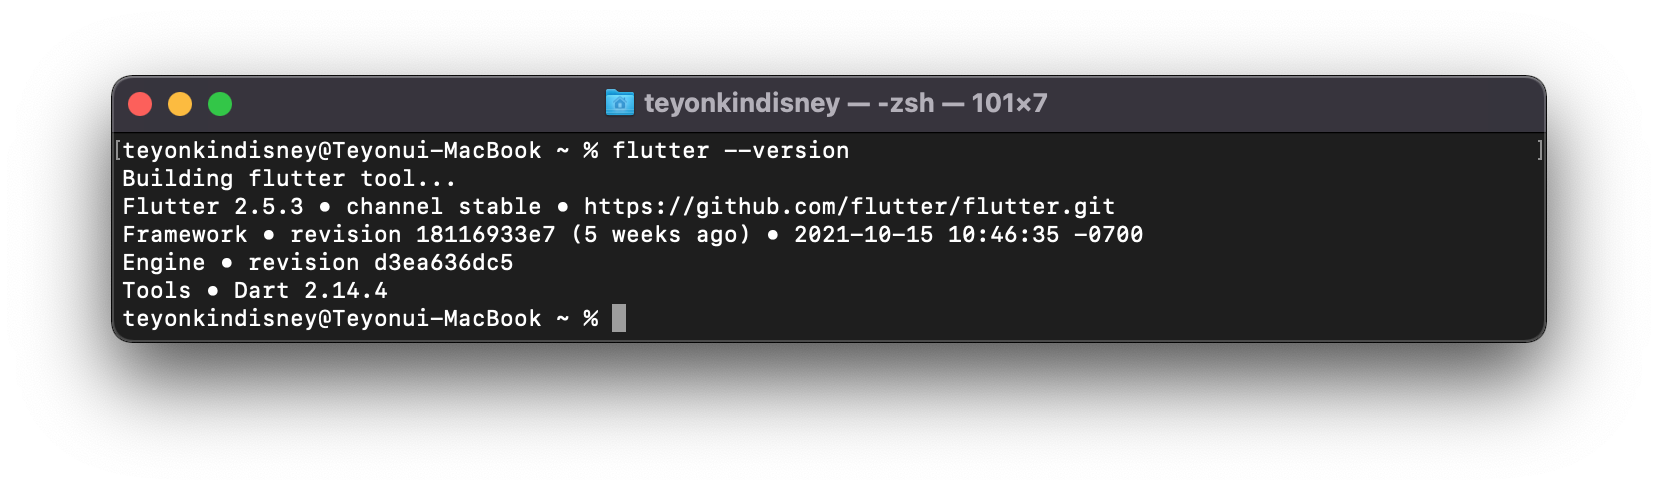 MacOS install flutter sdk